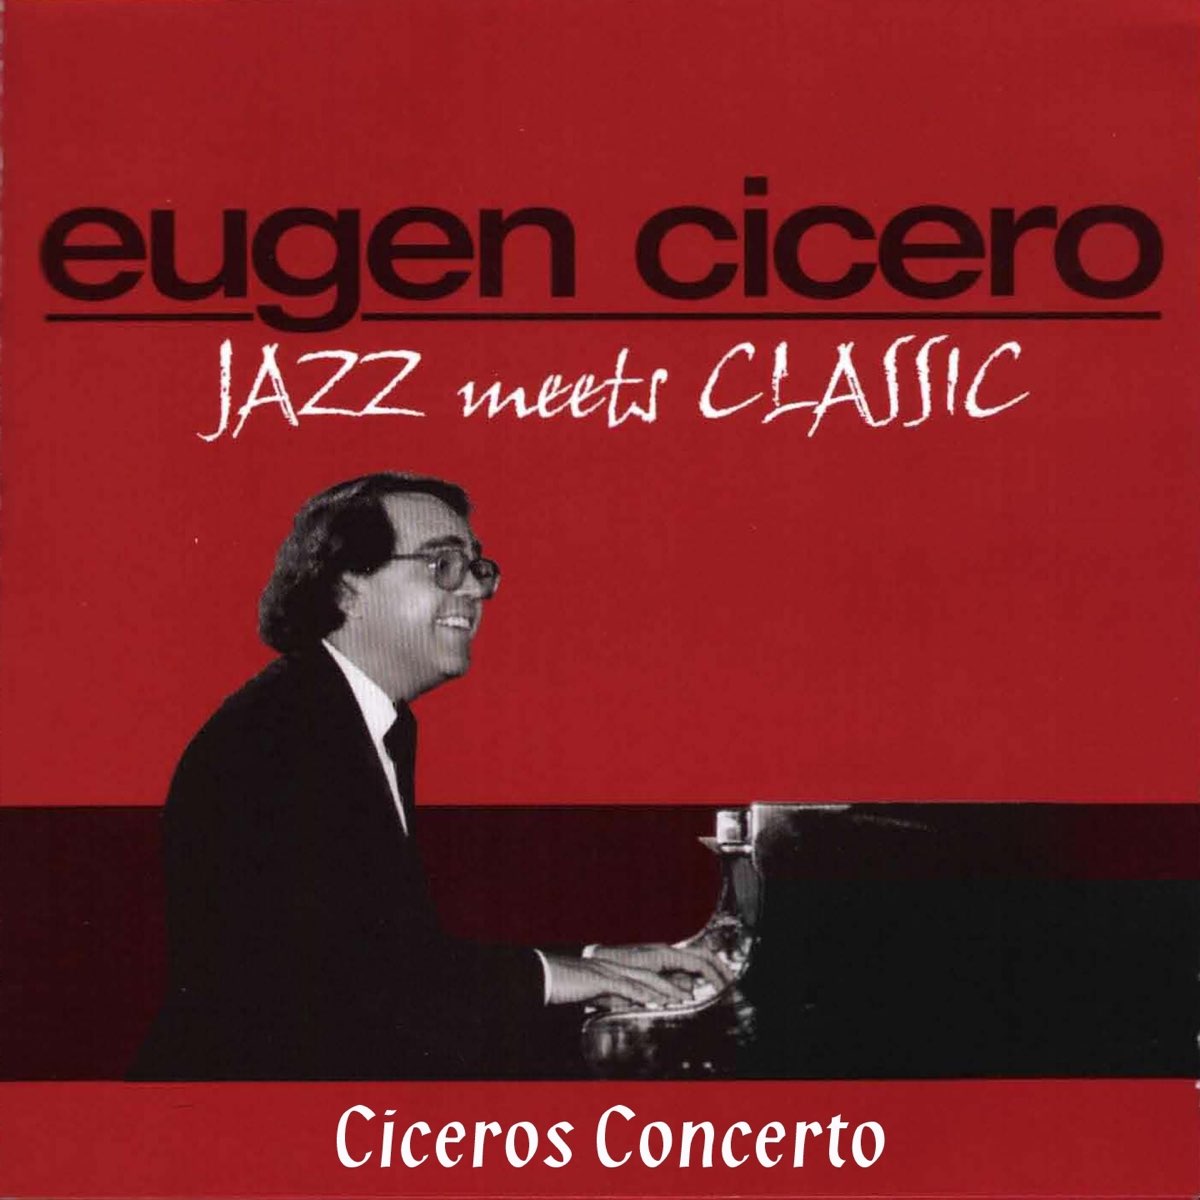 オイゲン・キケロの「Jazz Meets Classic (Ciceros Concerto)」をApple Musicで